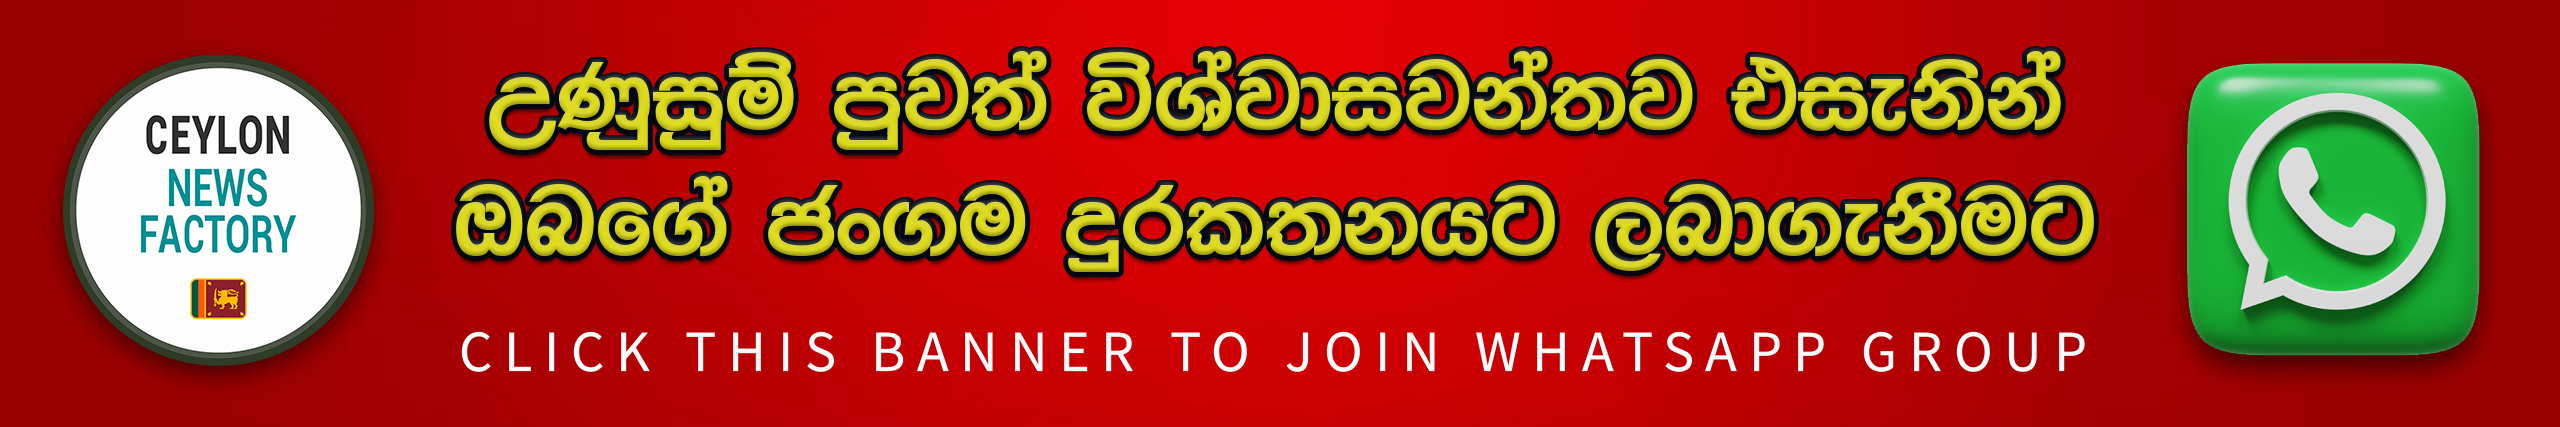 WhatsApp web banner CNF